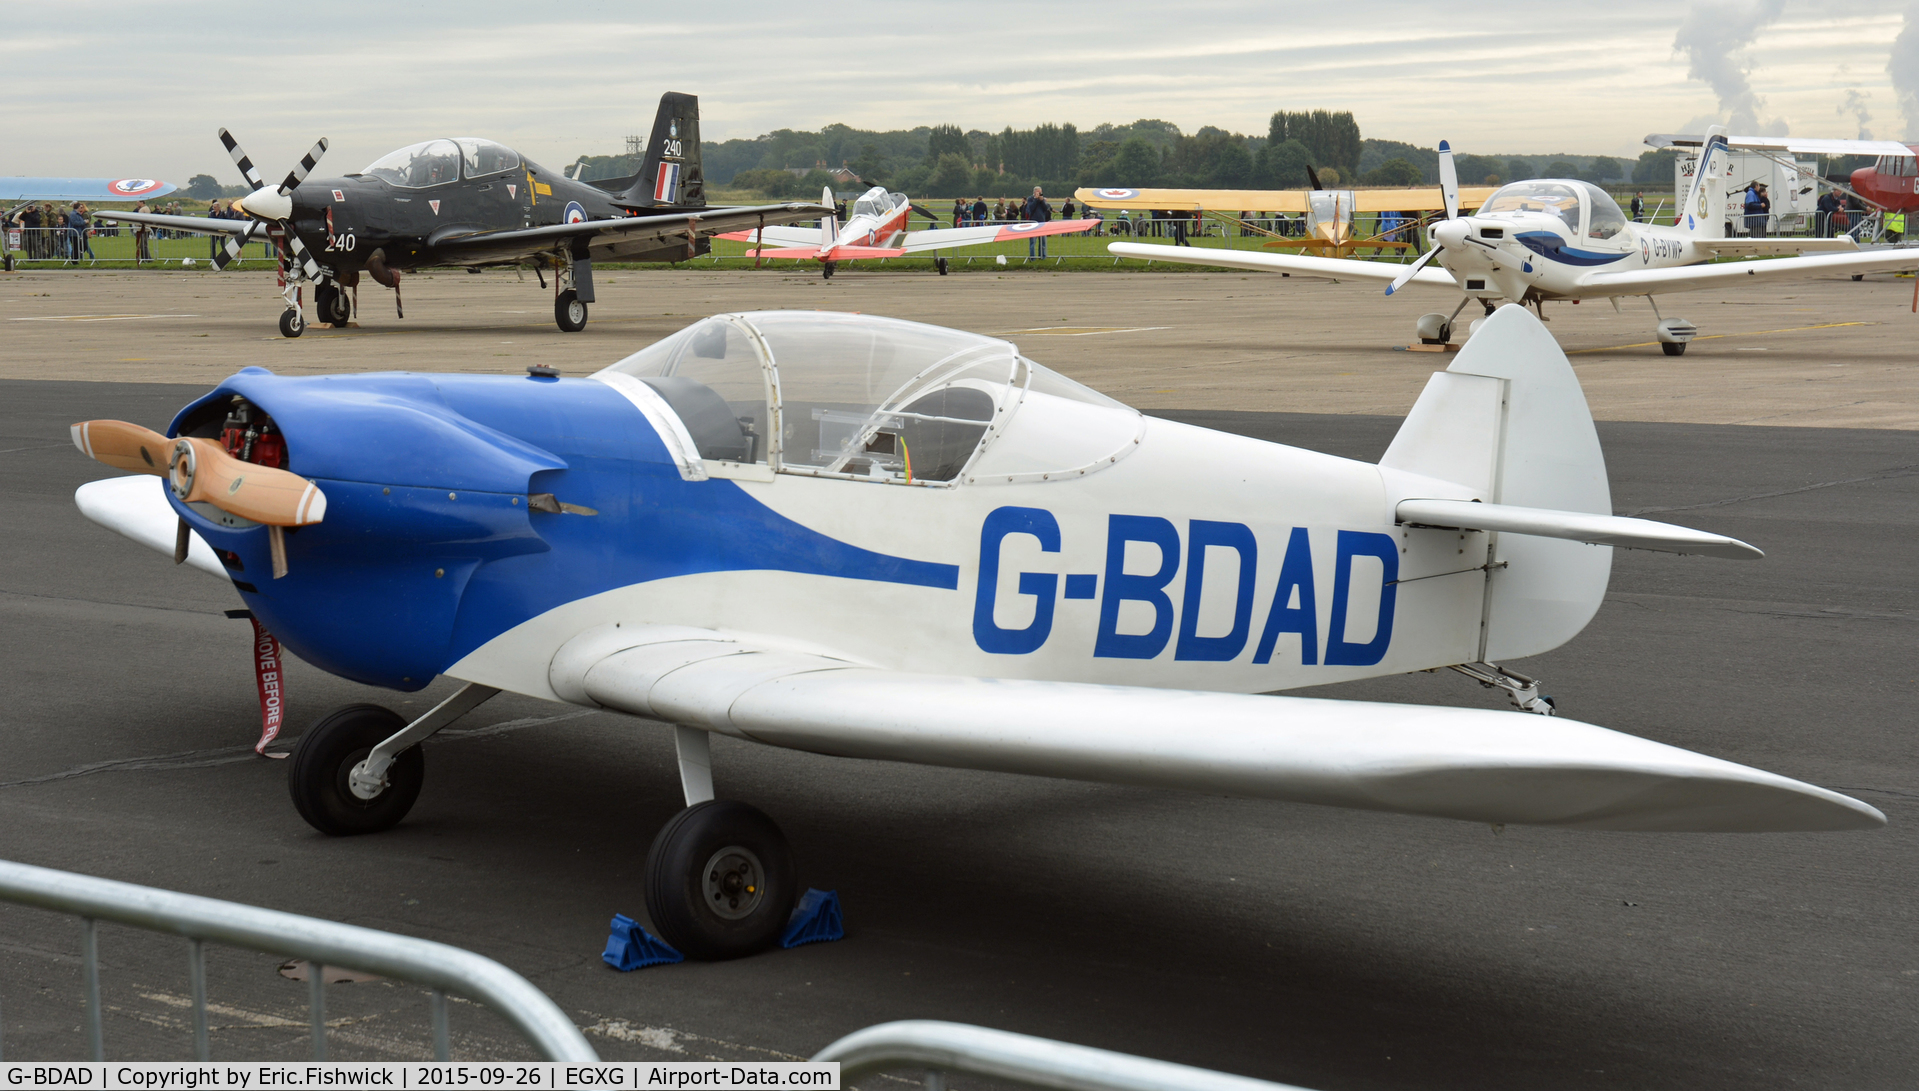 G-BDAD, 1976 Taylor JT-1 Monoplane C/N PFA 1453, 3. G-BDAD at The Yorkshire Air Show, Church Fenton, Sept. 2015.